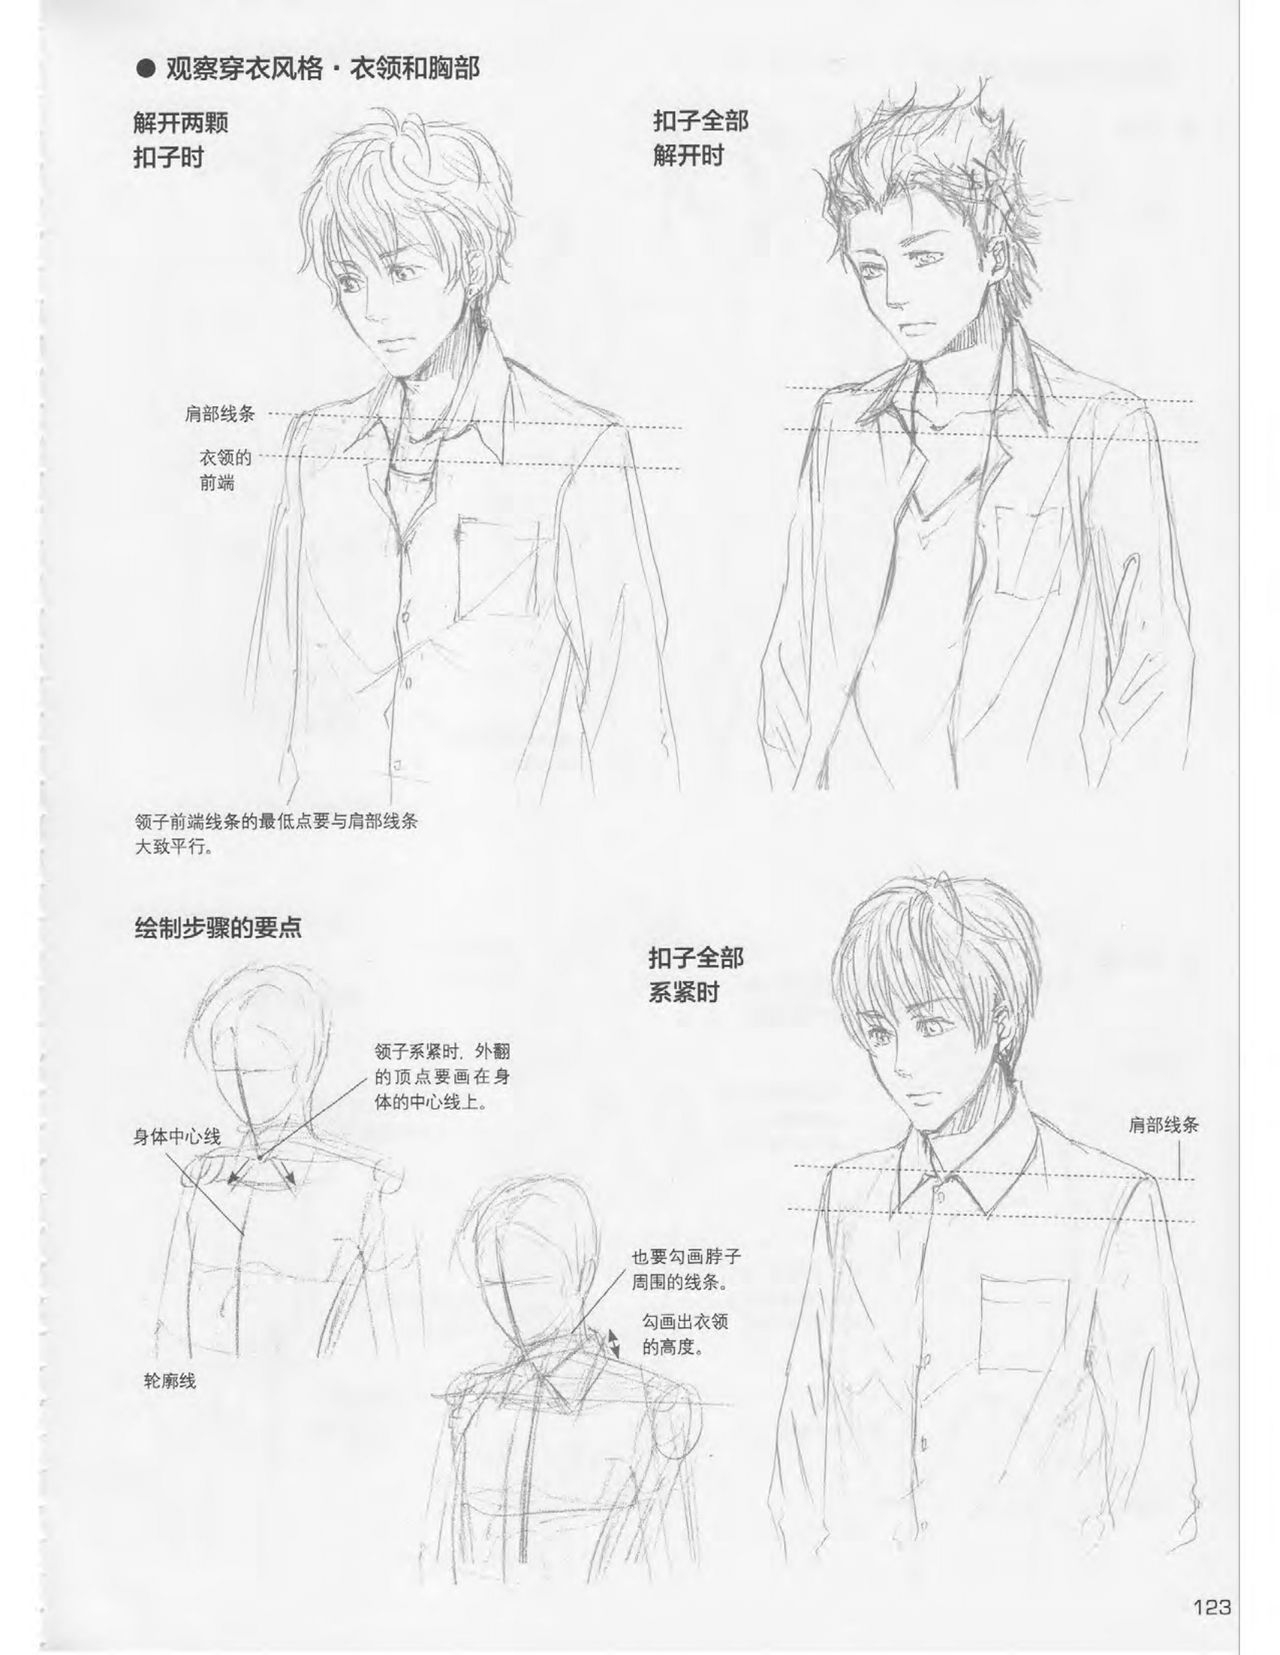 Japanese Manga Master Lecture 3: Lin Akira and Kakumaru Maru Talk About Glamorous Character Modeling 122